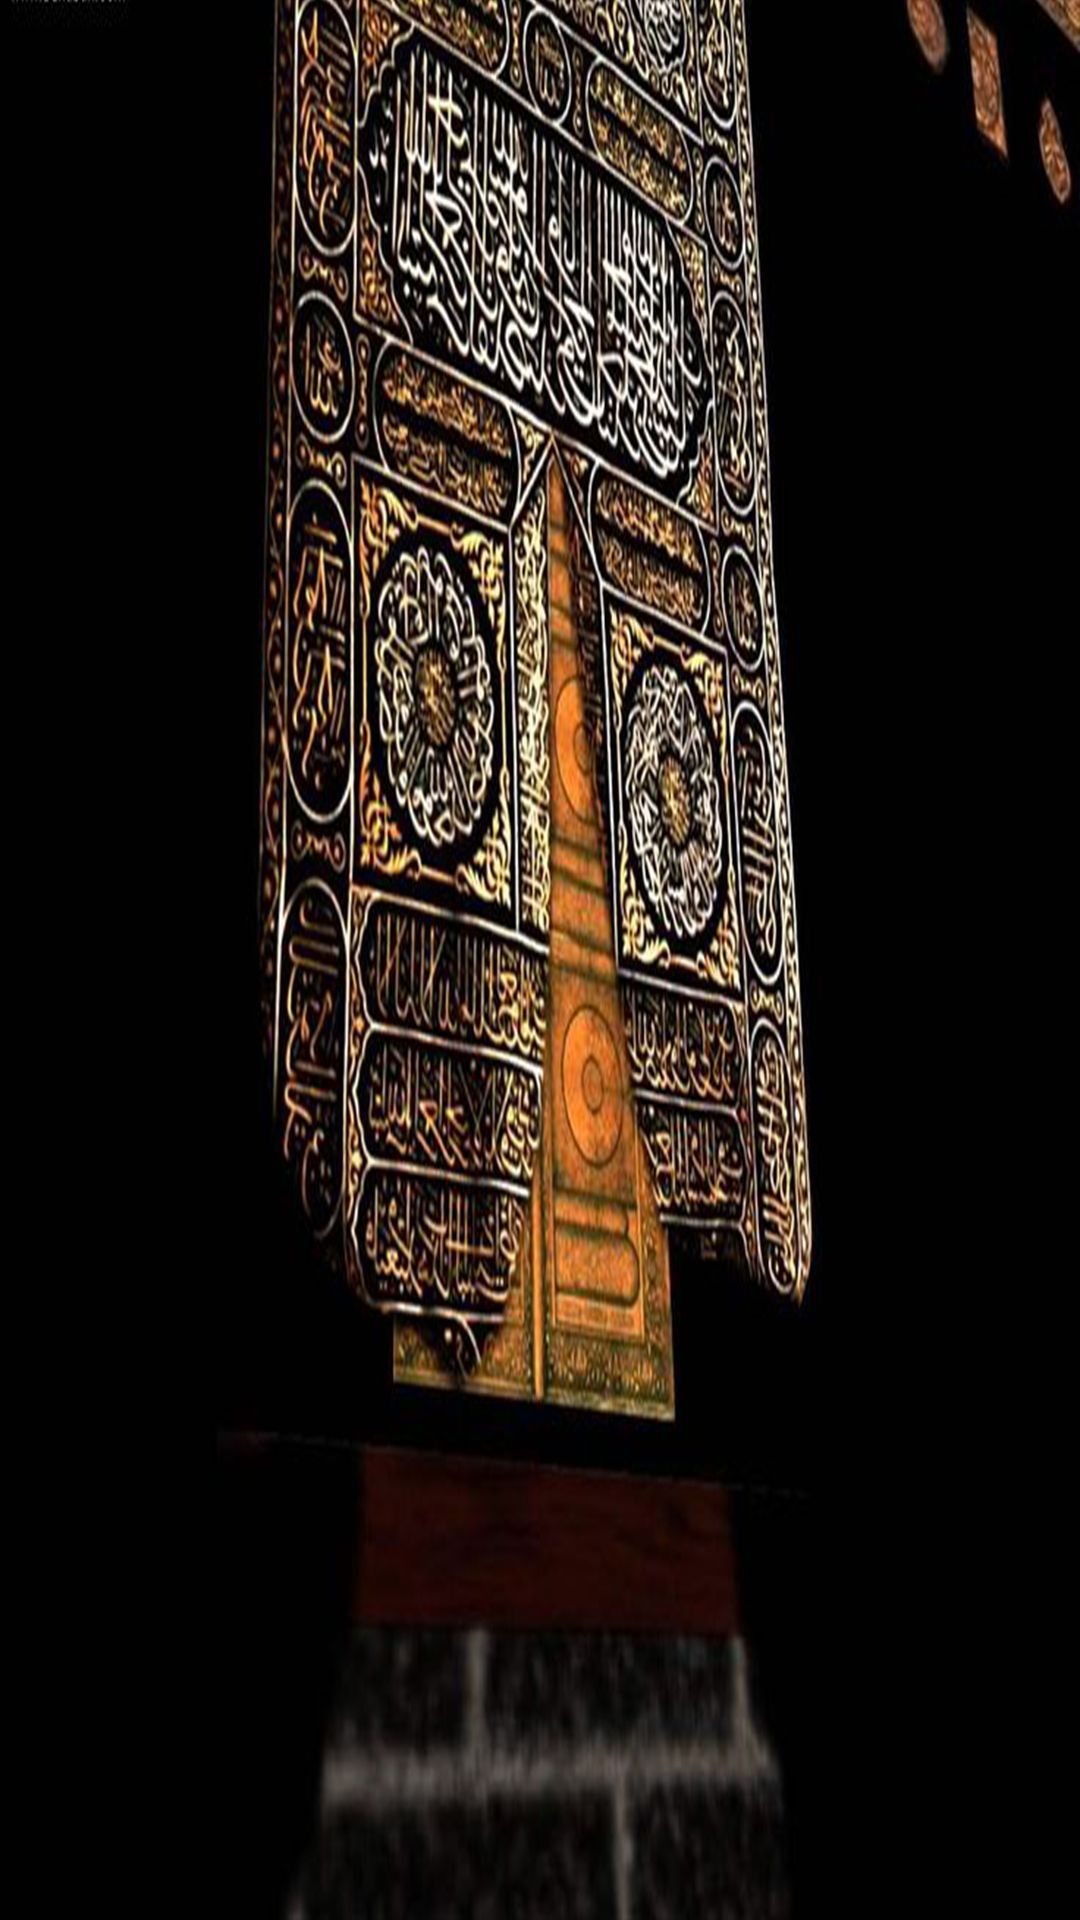 Islamic 4k Phone Wallpapers - Wallpaper Cave